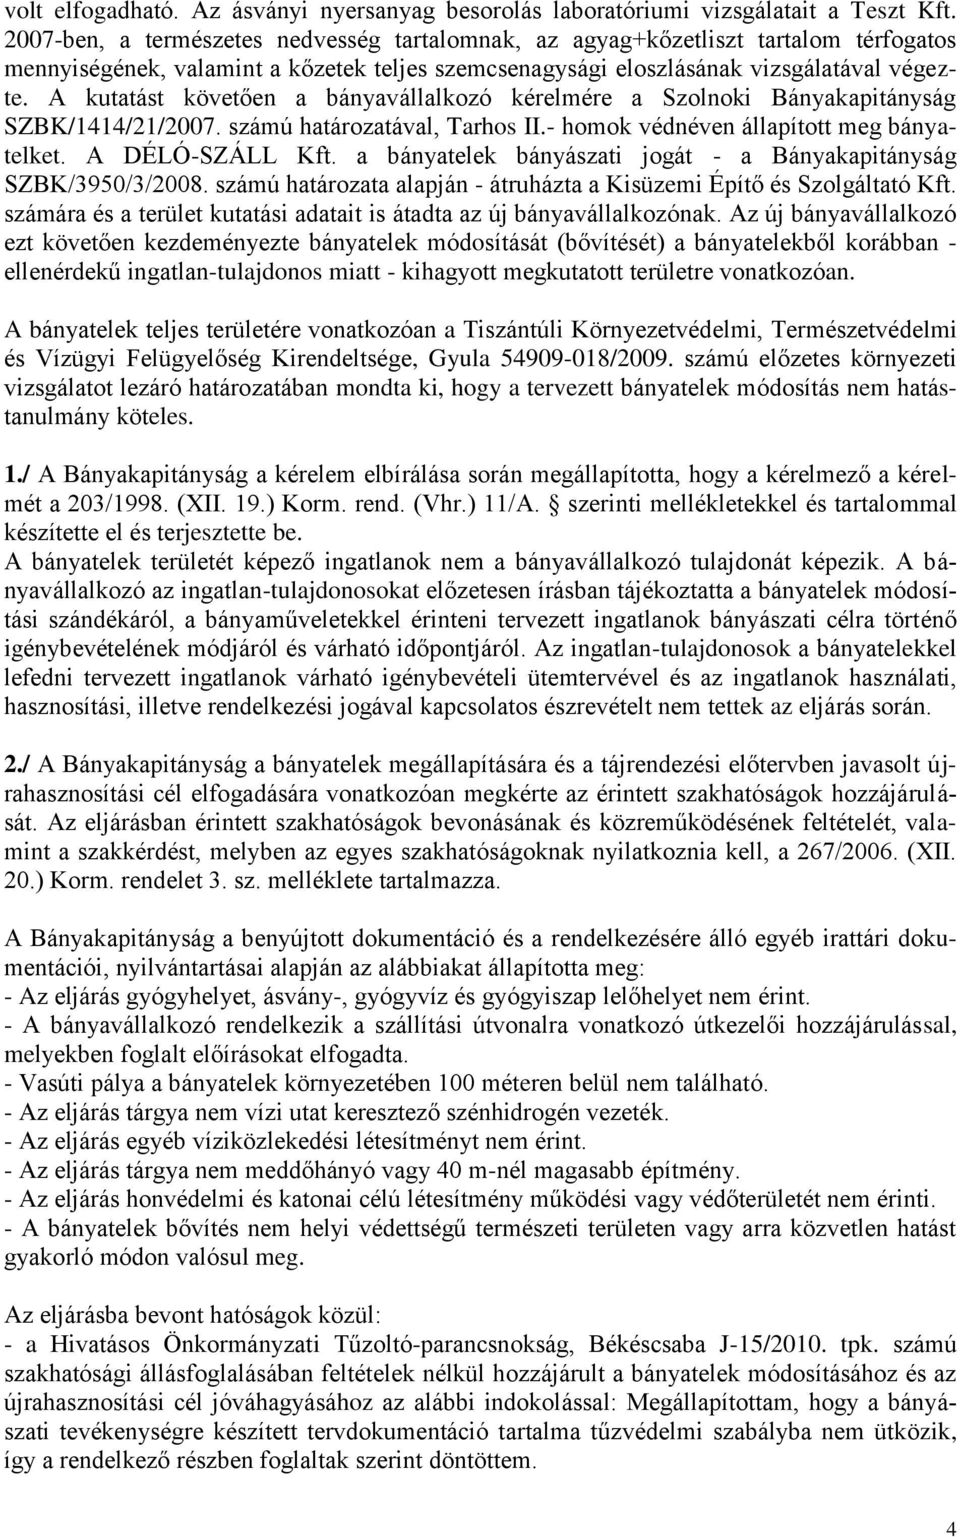 A kutatást követően a bányavállalkozó kérelmére a Szolnoki Bányakapitányság SZBK/1414/21/2007. számú határozatával, Tarhos II.- homok védnéven állapított meg bányatelket. A DÉLÓ-SZÁLL Kft.